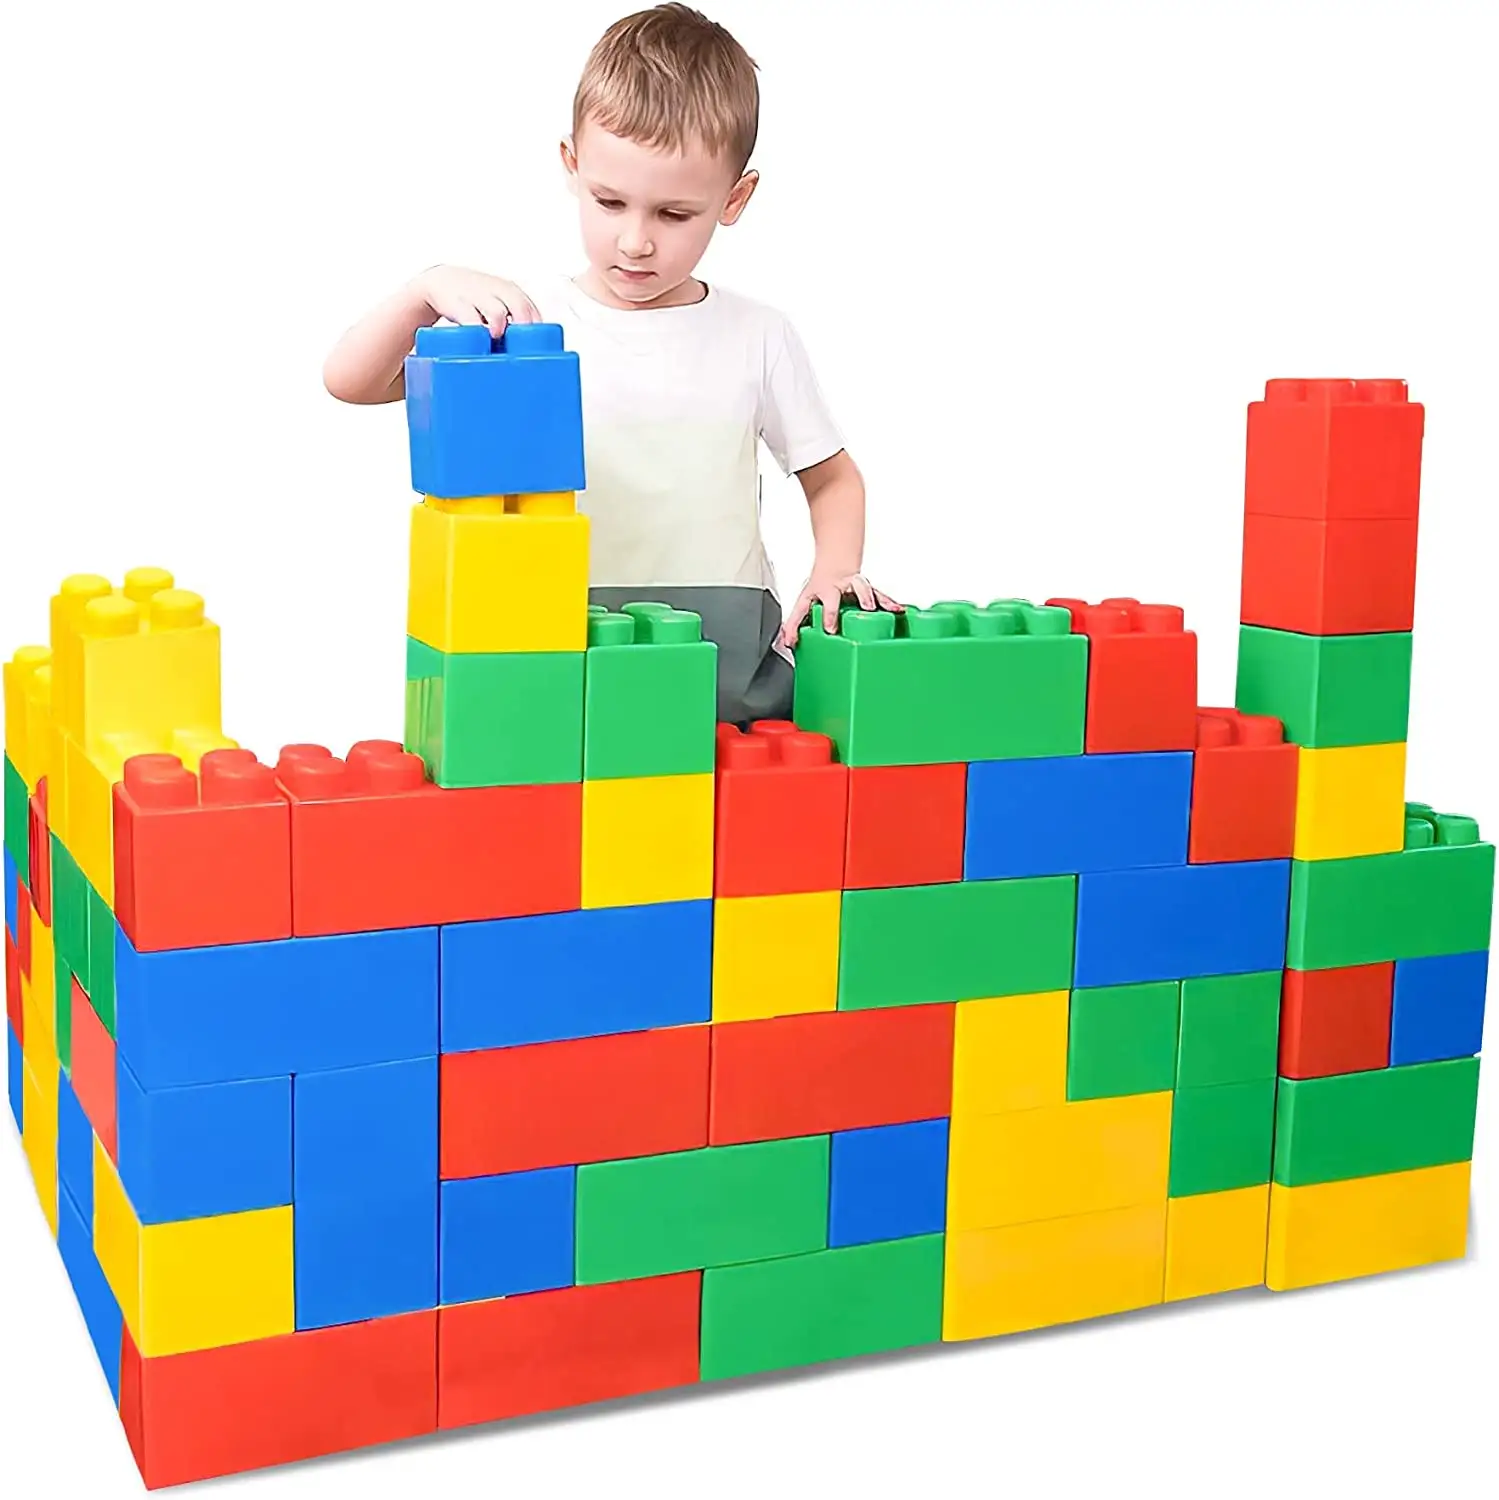 Jumbo Blocks for Toddlers Plastic Large Building Blocks for Kids Giant Stacking Bricks for Children